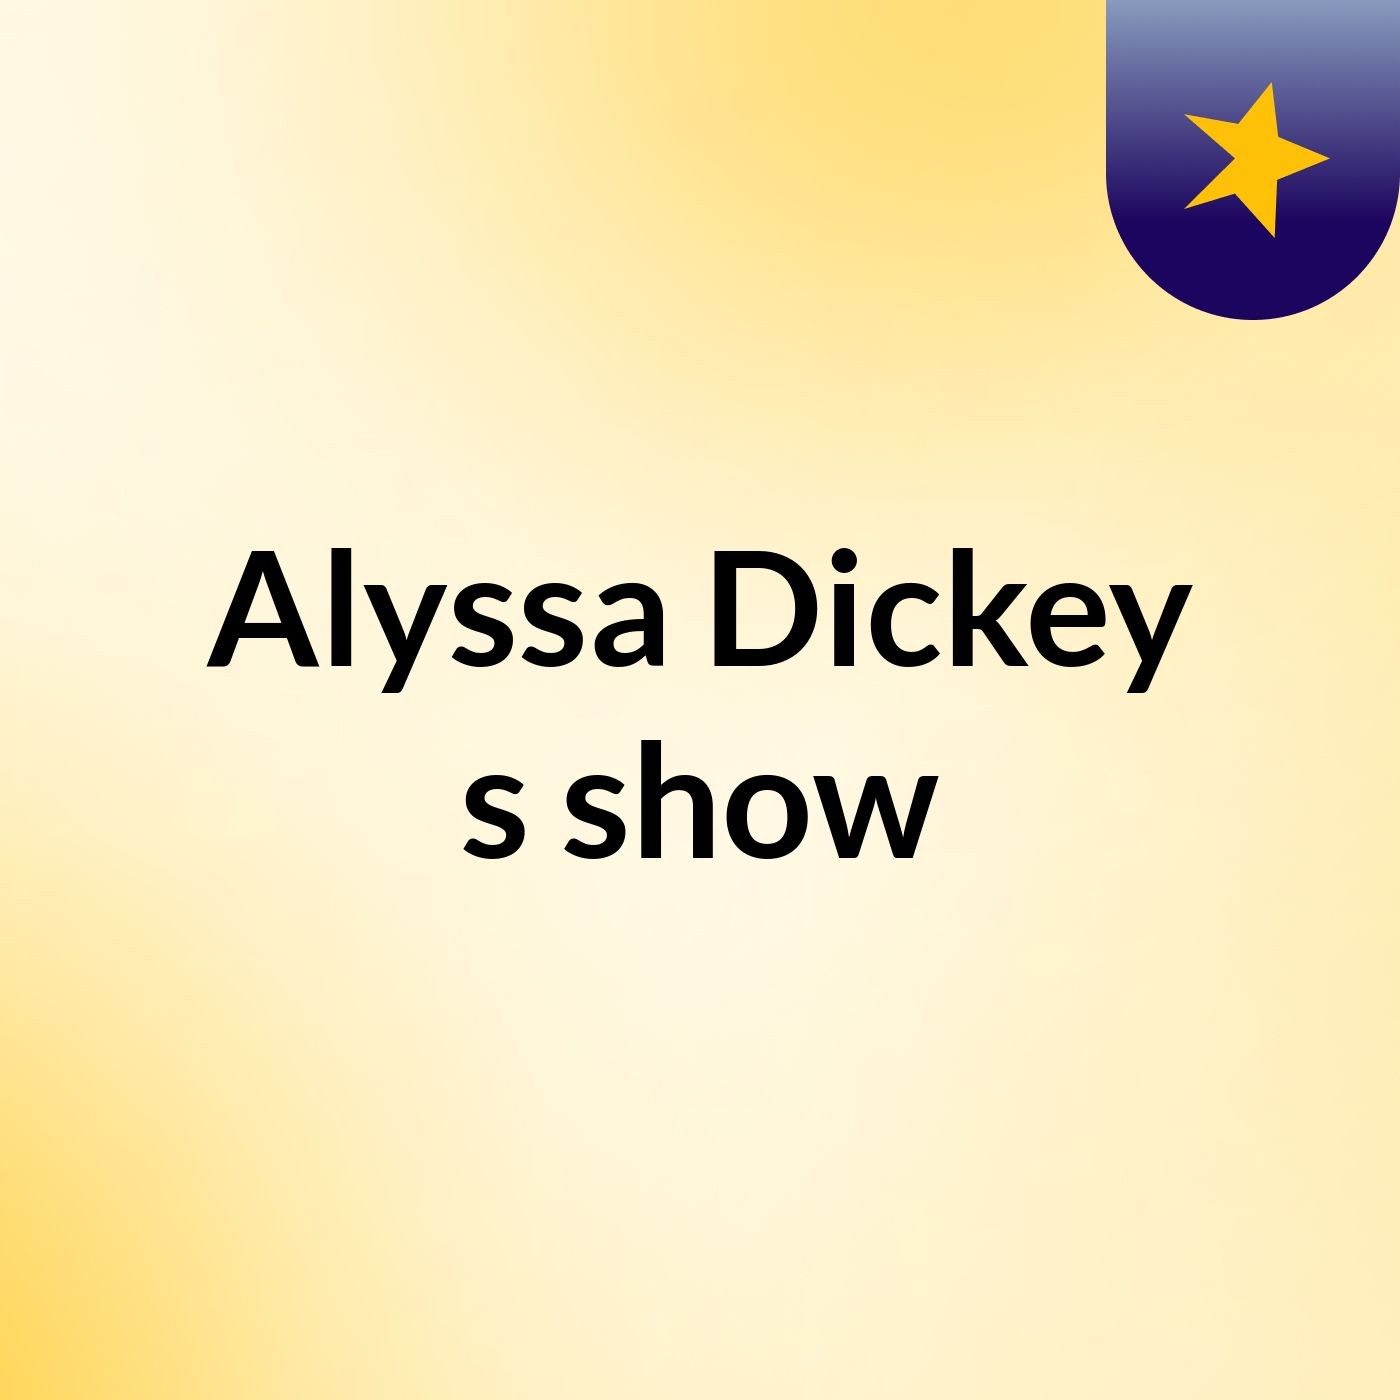 Alyssa Dickey's show